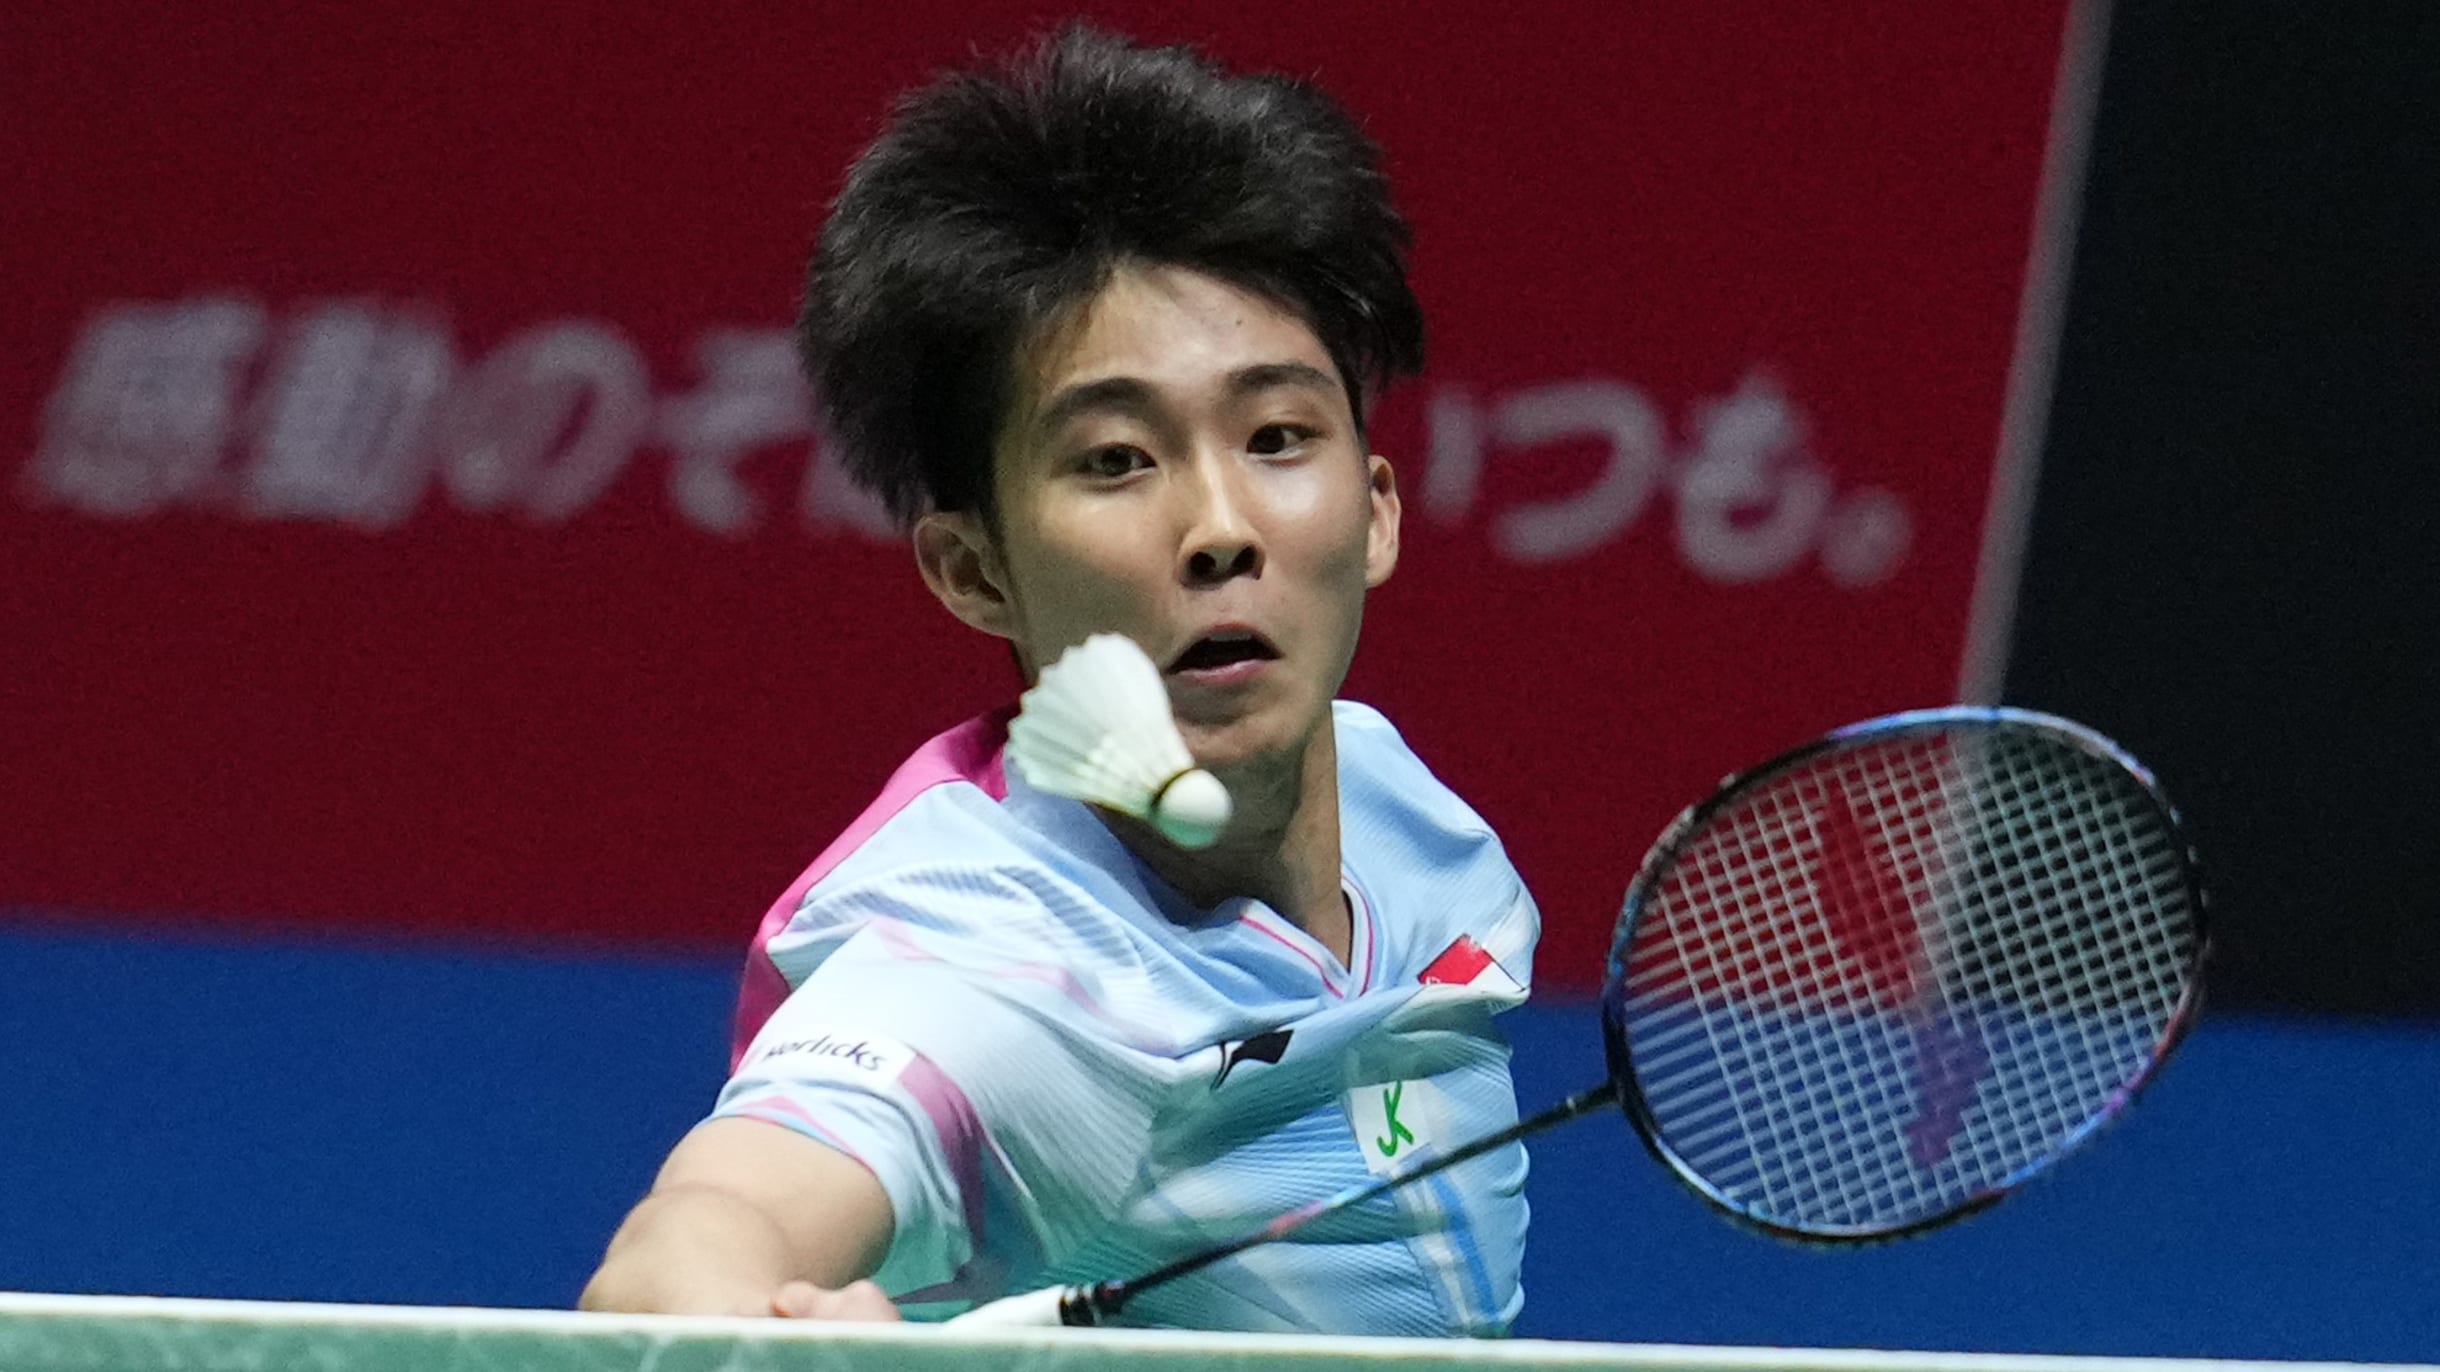 Badminton Loh Kean Yew knocks out world bronze medallist Zhao Junpeng as Japan Open starts in Osaka